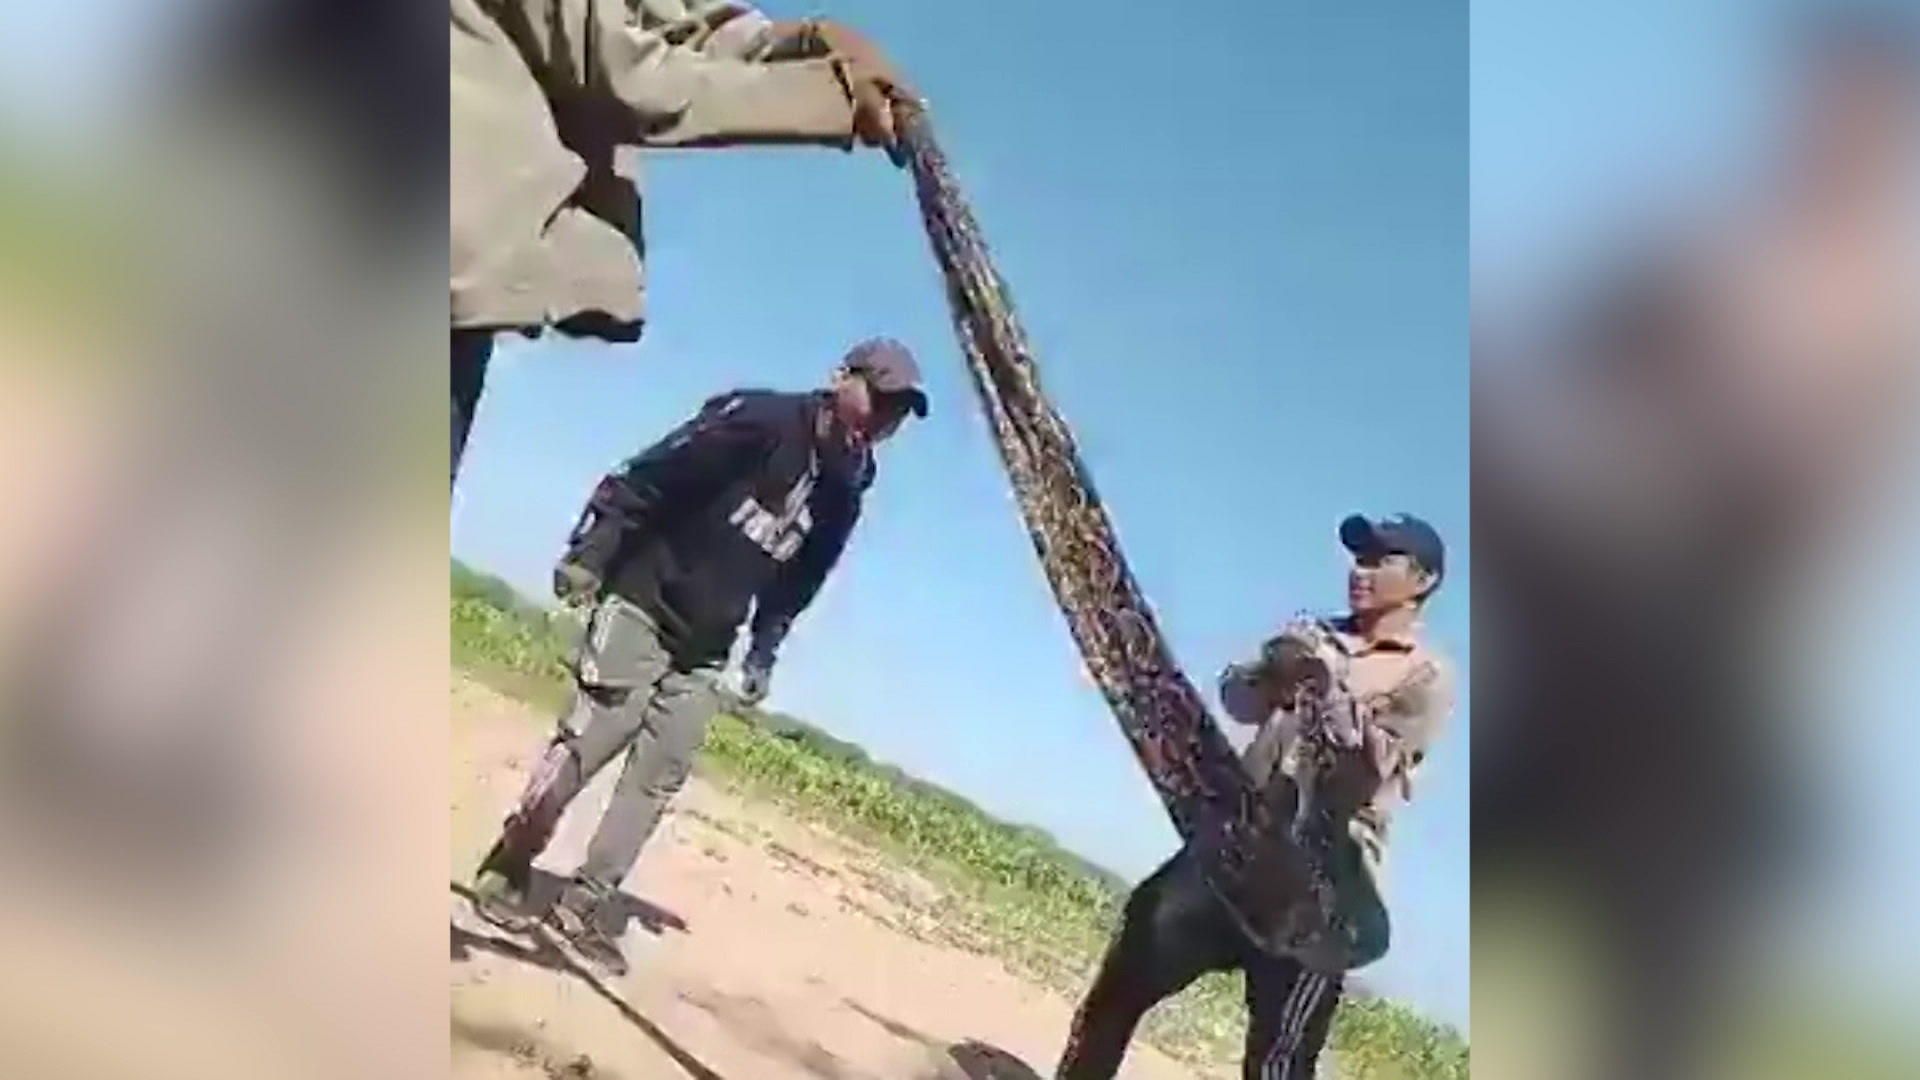 Orribile crudeltà sugli animali in cui gli uomini abusano dei serpenti come corde per saltare!